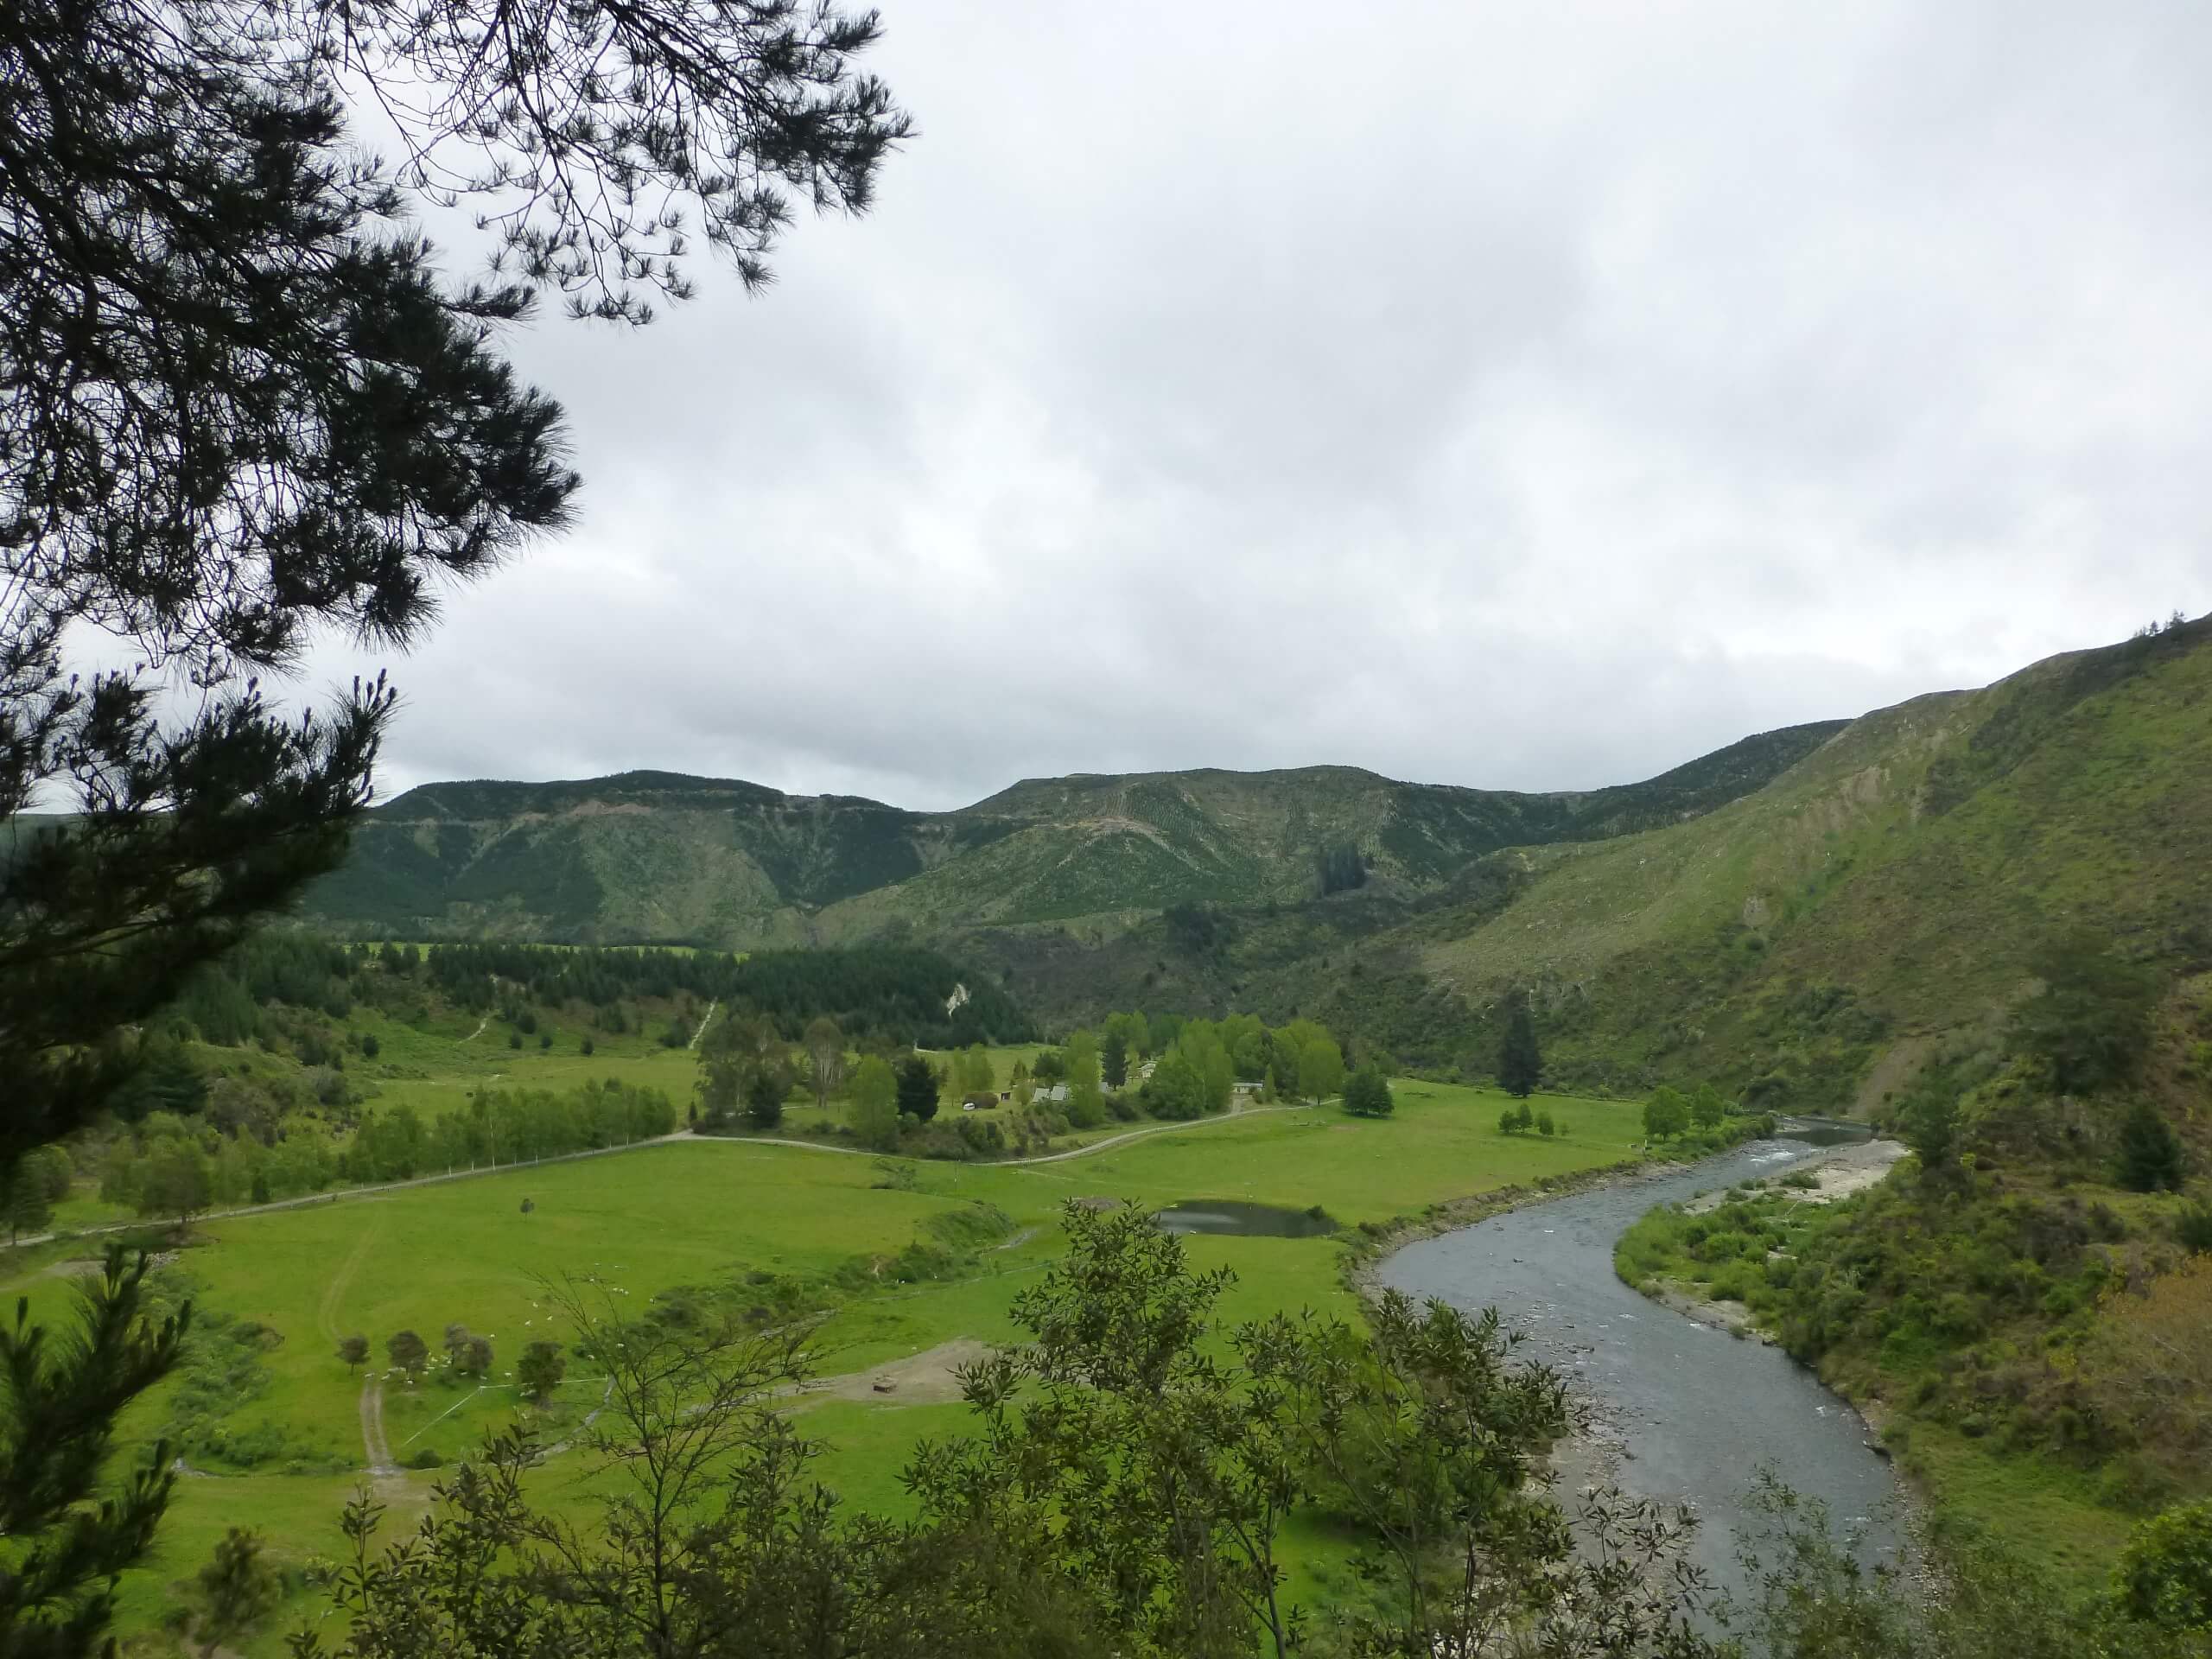 Weit weg Reisen, im Tal des Mōhaka River, die Mountain Valley Adventures Lodge 2